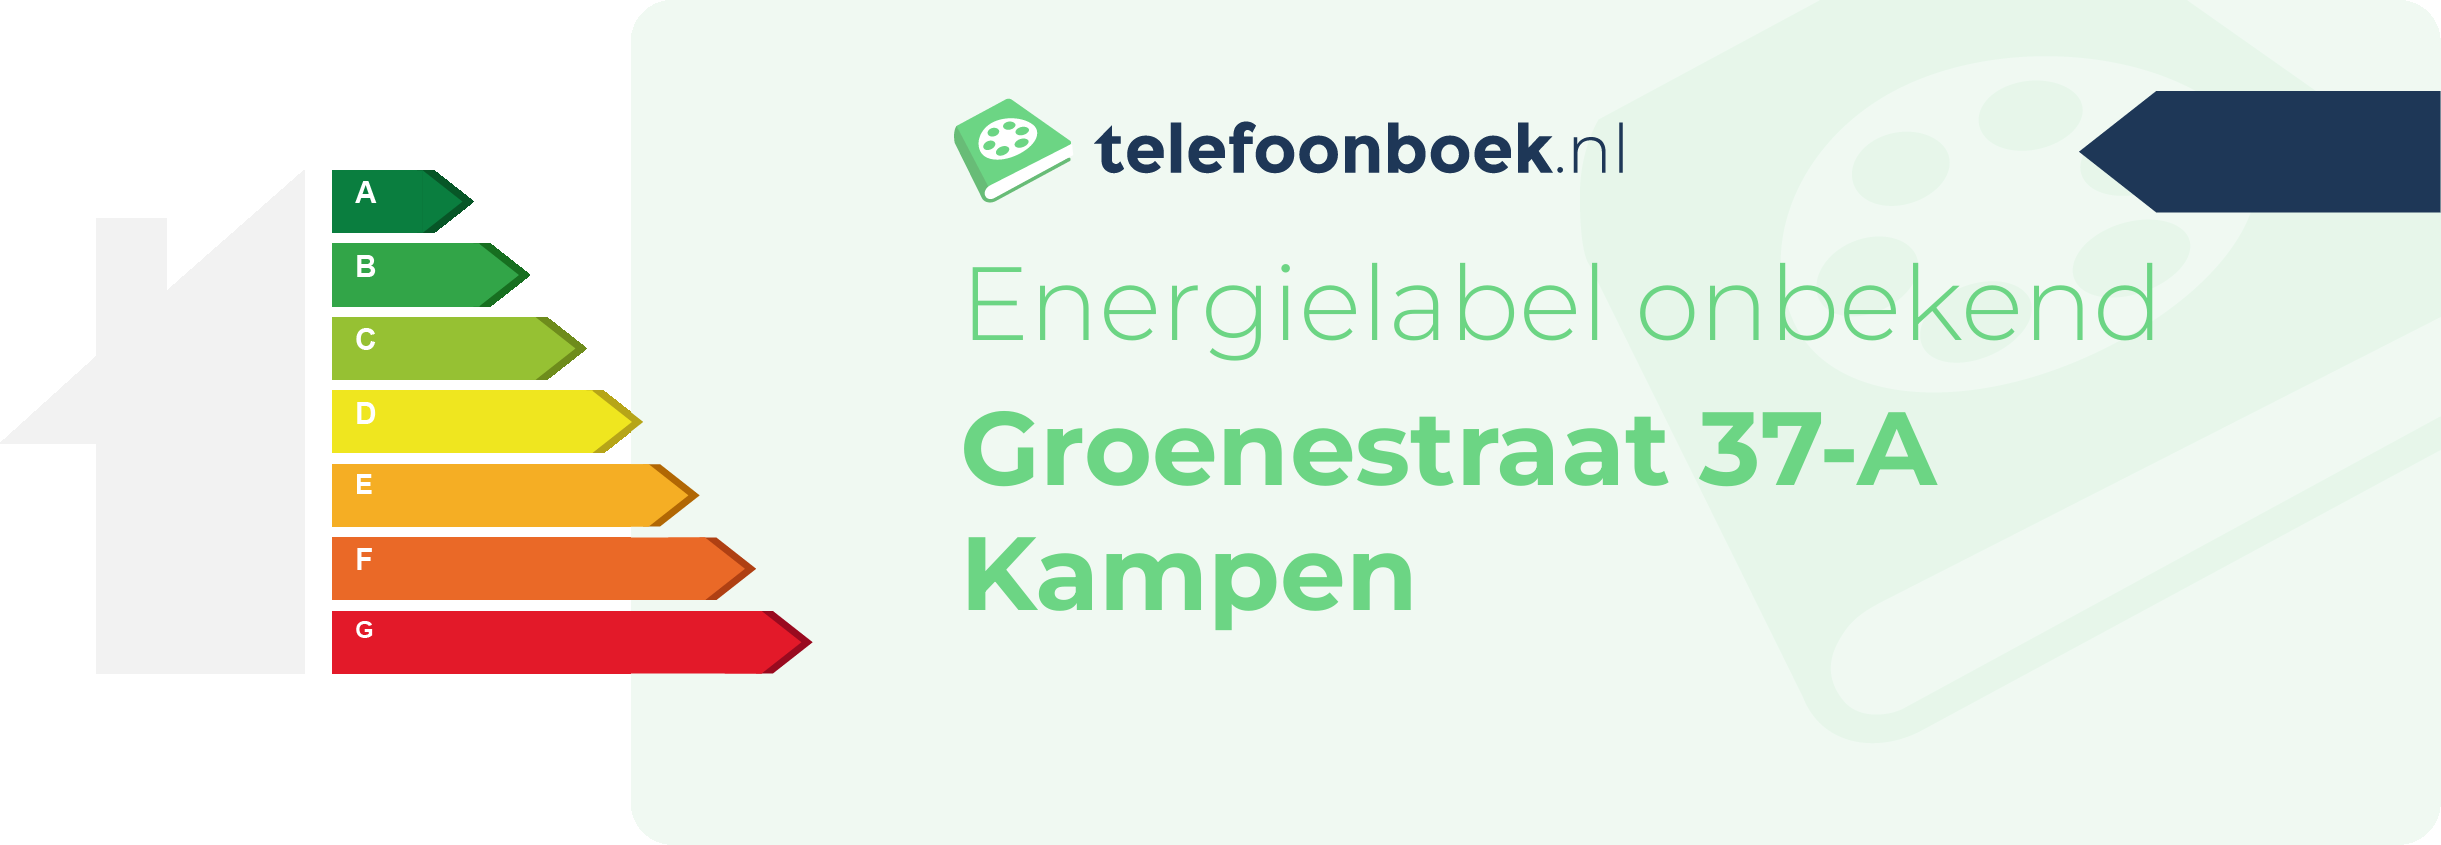 Energielabel Groenestraat 37-A Kampen